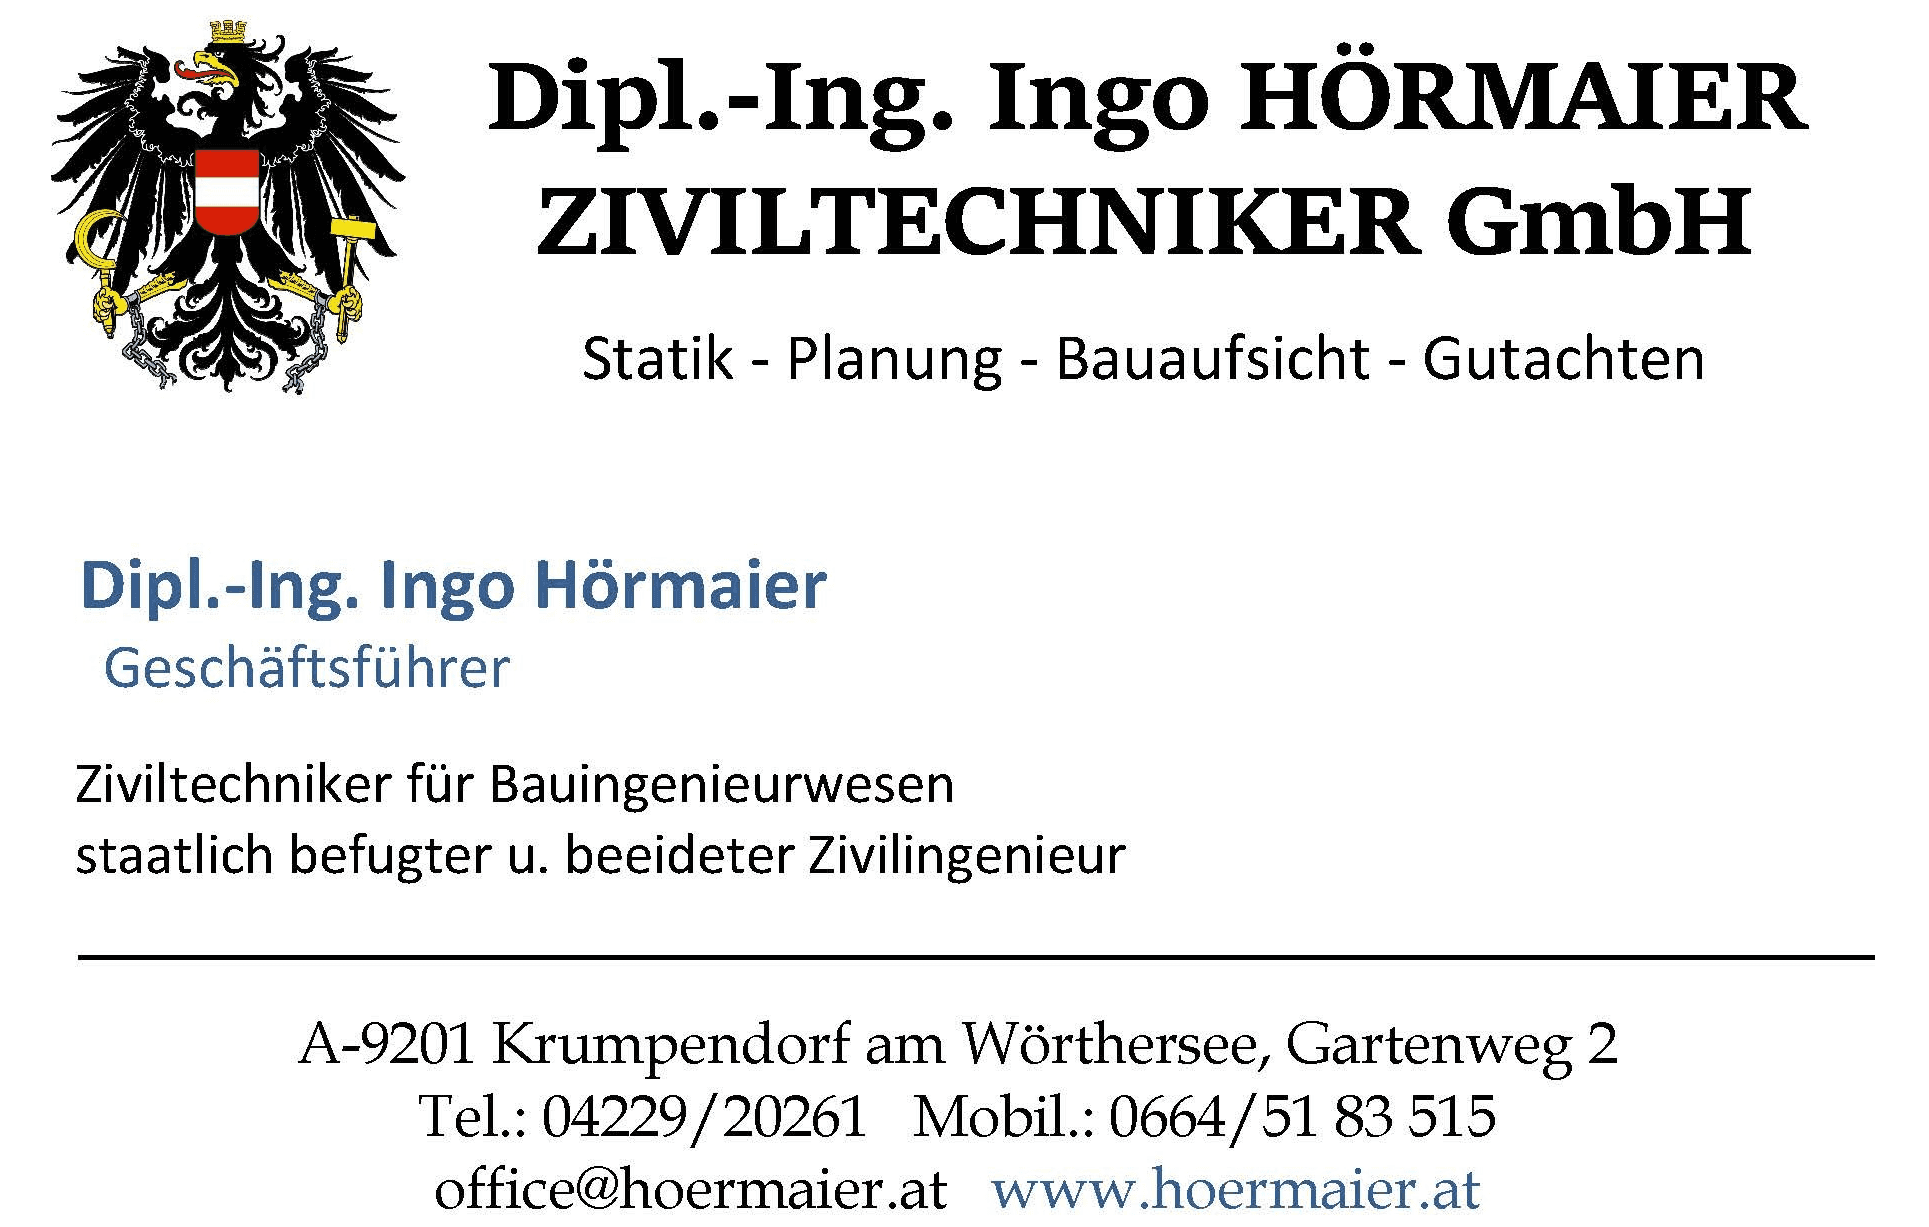 Vorschau - Foto 1 von Dipl.-Ing. Ingo HÖRMAIER ZIVILTECHNIKER GmbH